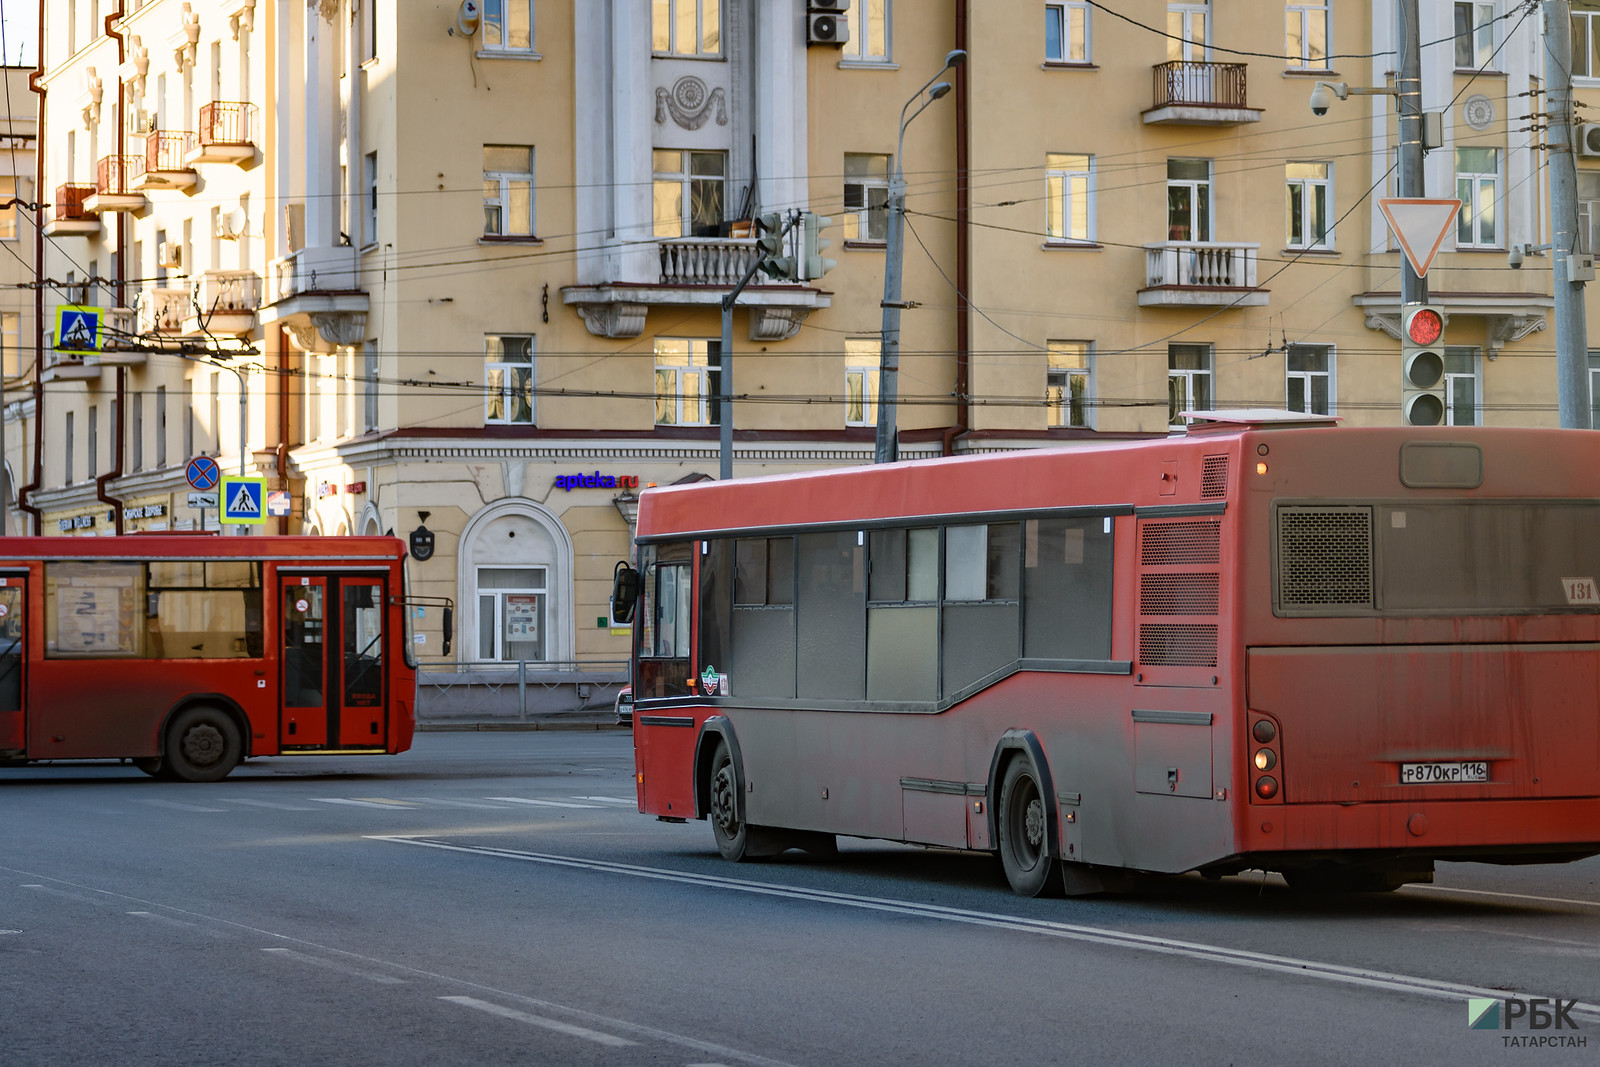 СМИ сообщили о нападении на кондуктора в казанском автобусе